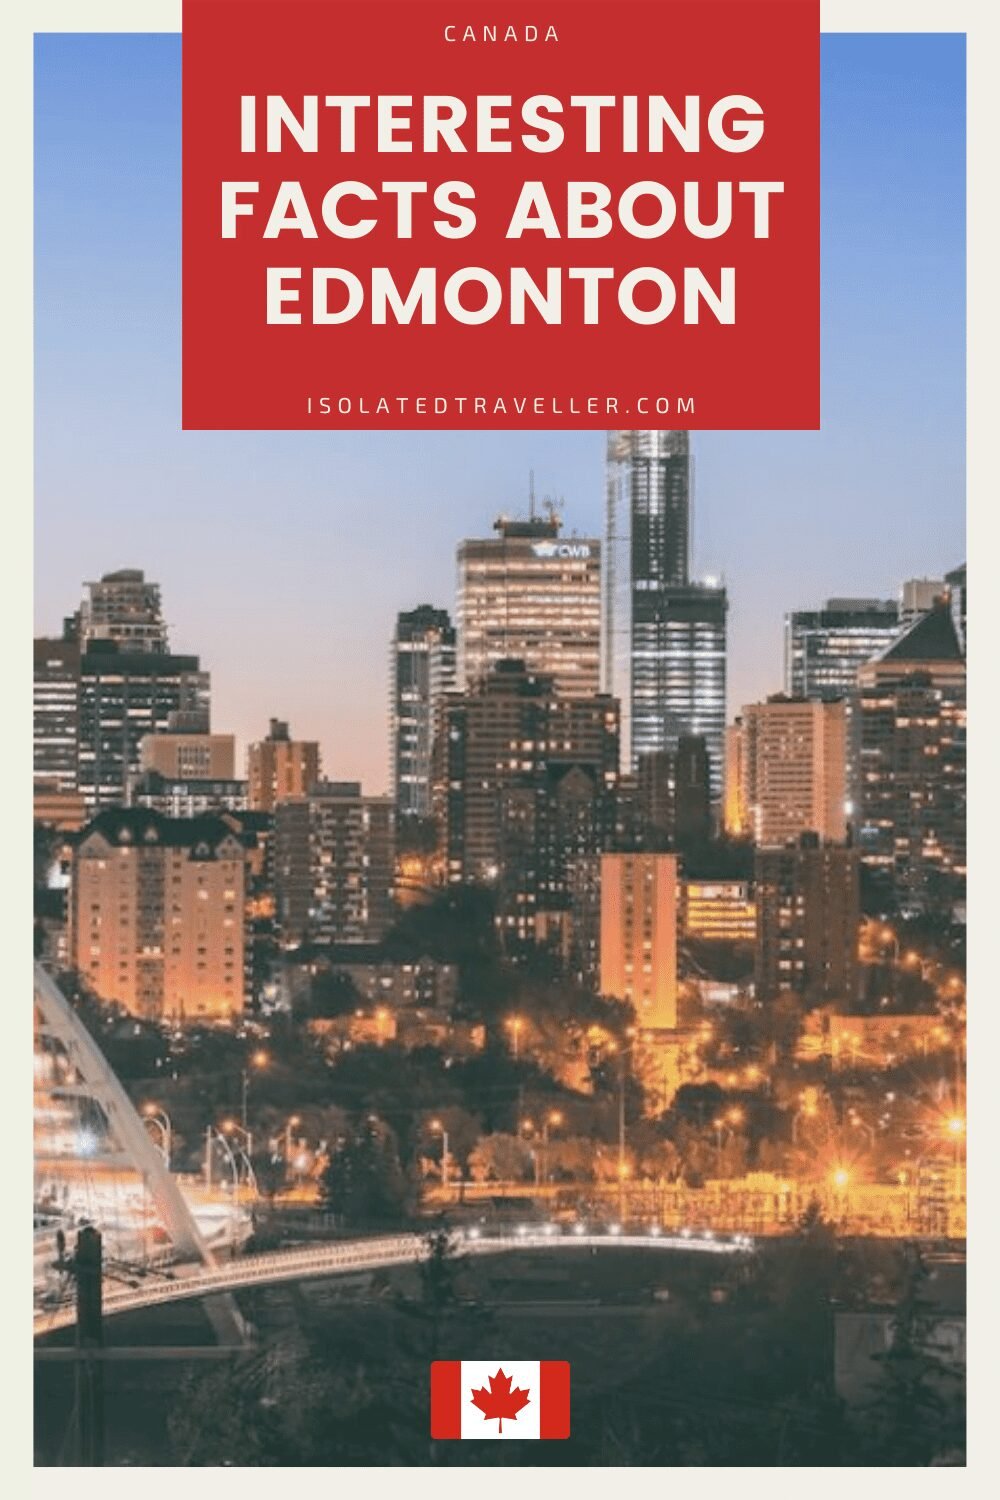 Facts About Edmonton